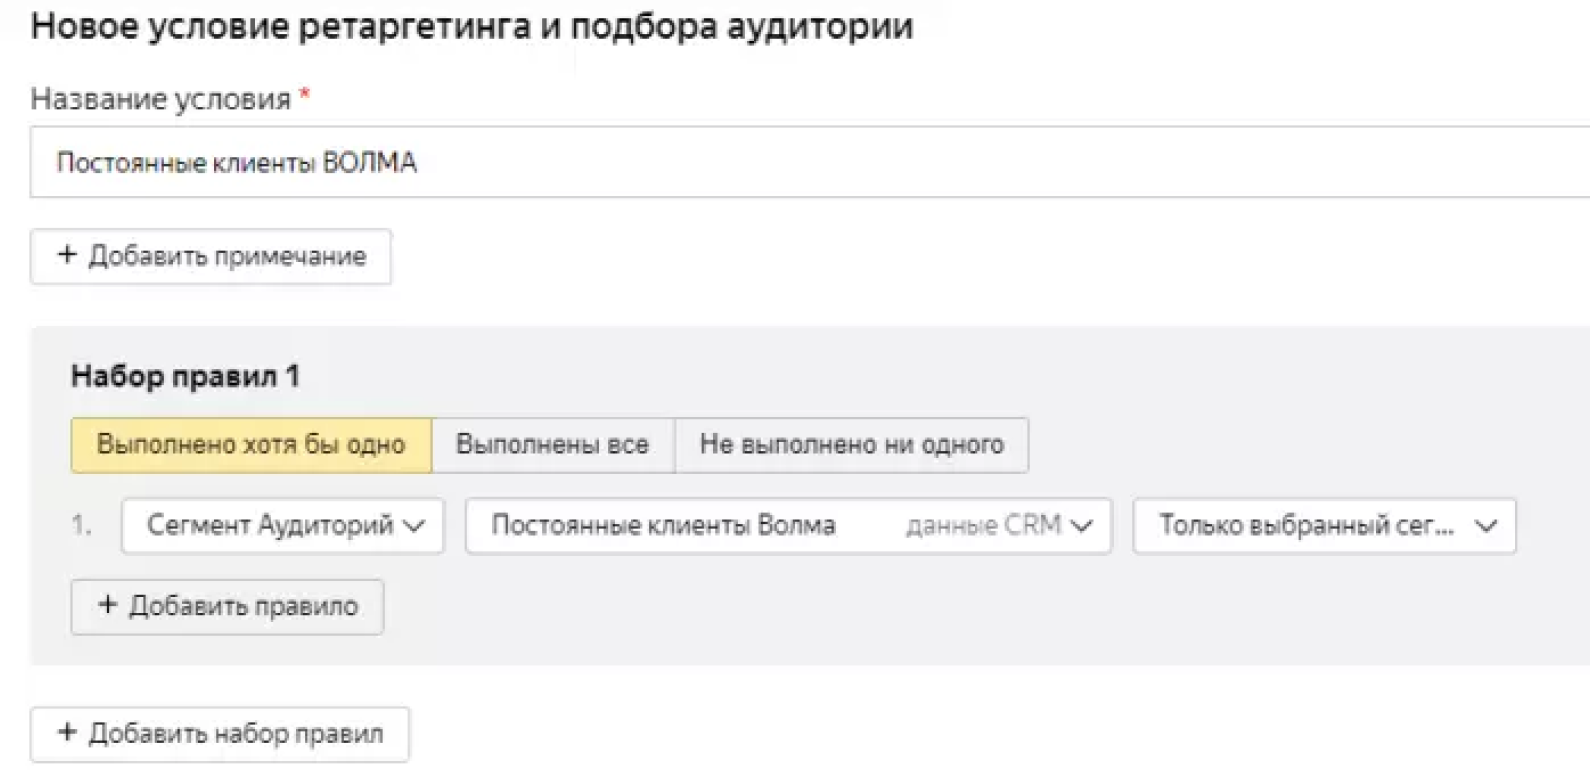 Окно настройки условий Сегмента Яндекс Аудиторий